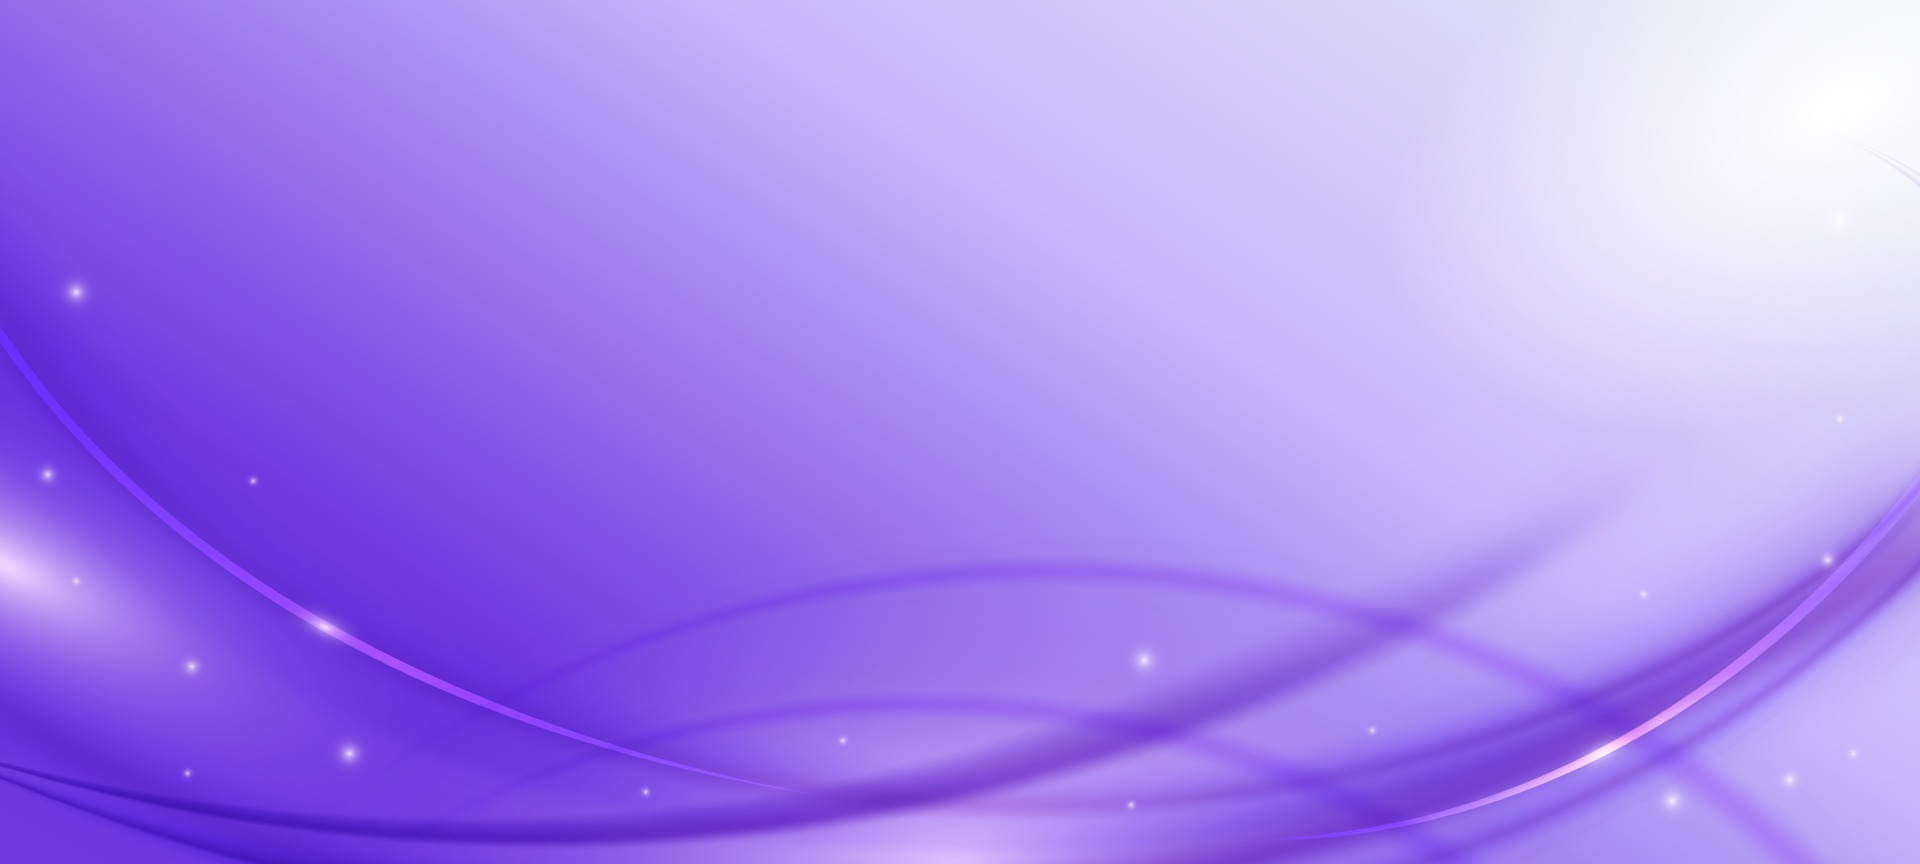 Purple Lavender Color Background 2421227 Vector Art at Vecteezy